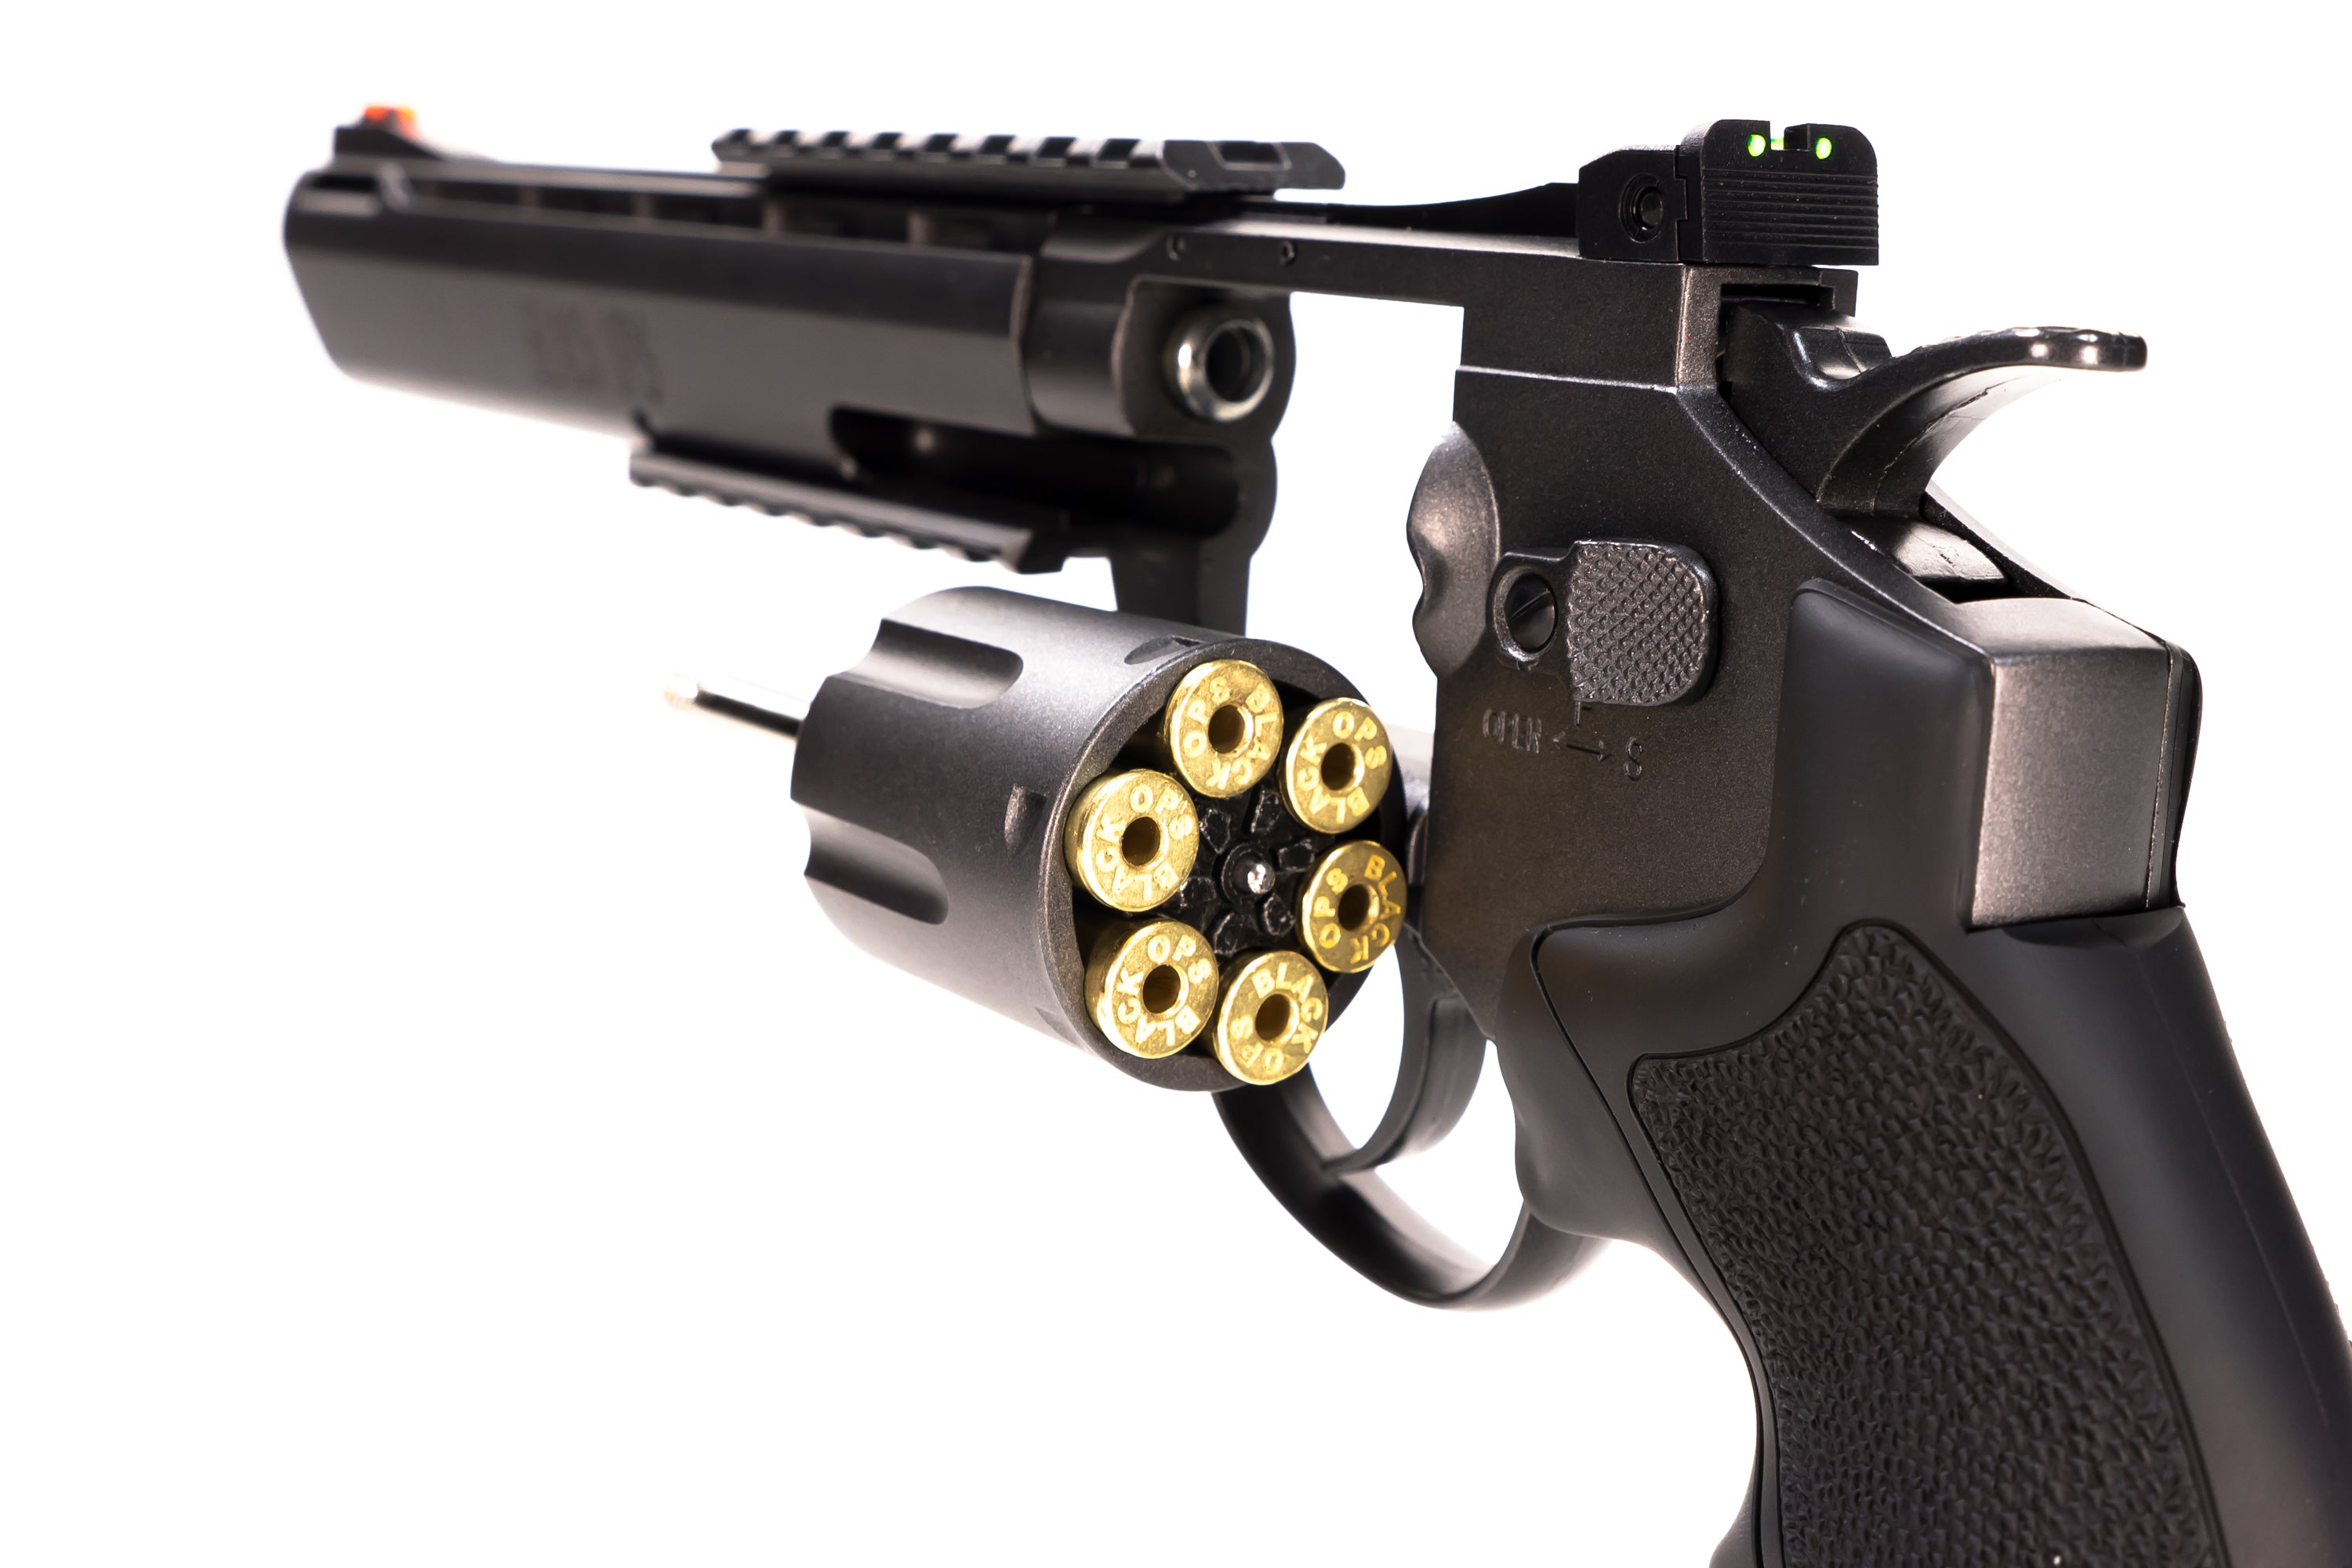 Exterminator Full Metal Revolver 6 Gun Metal - Black Ops USA